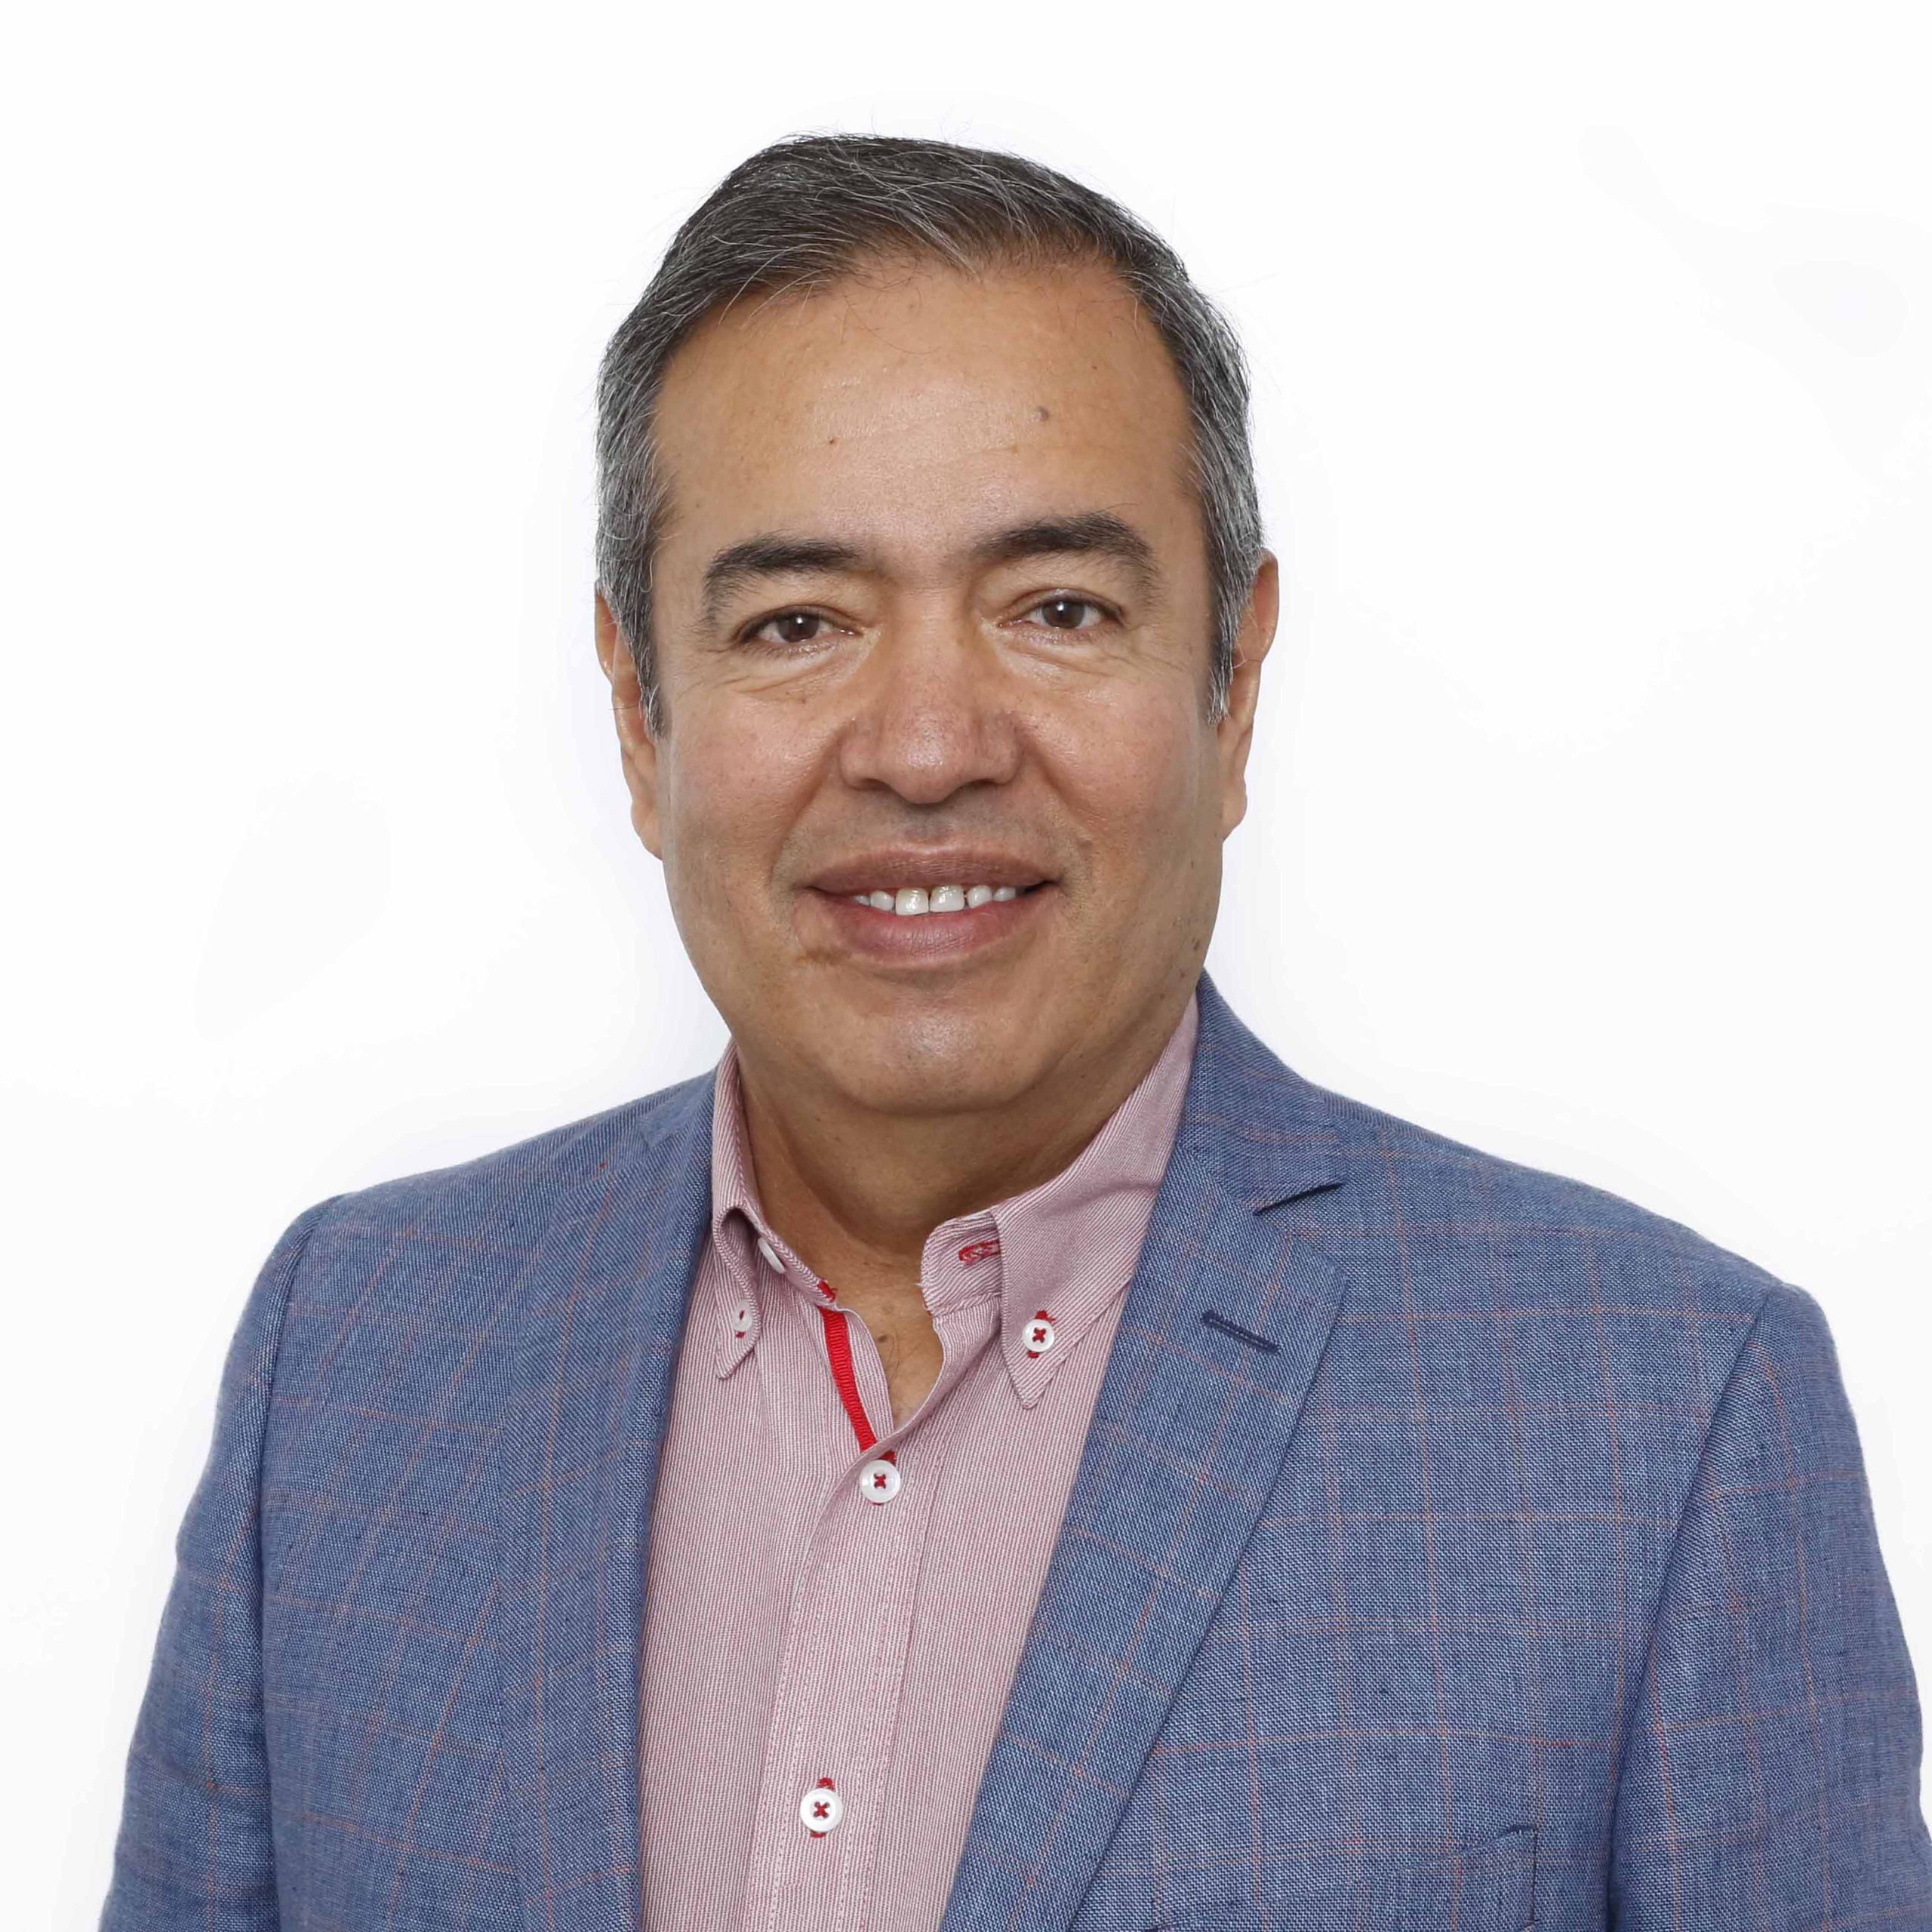 Dr. Arturo Gerardo Valdivia Flores